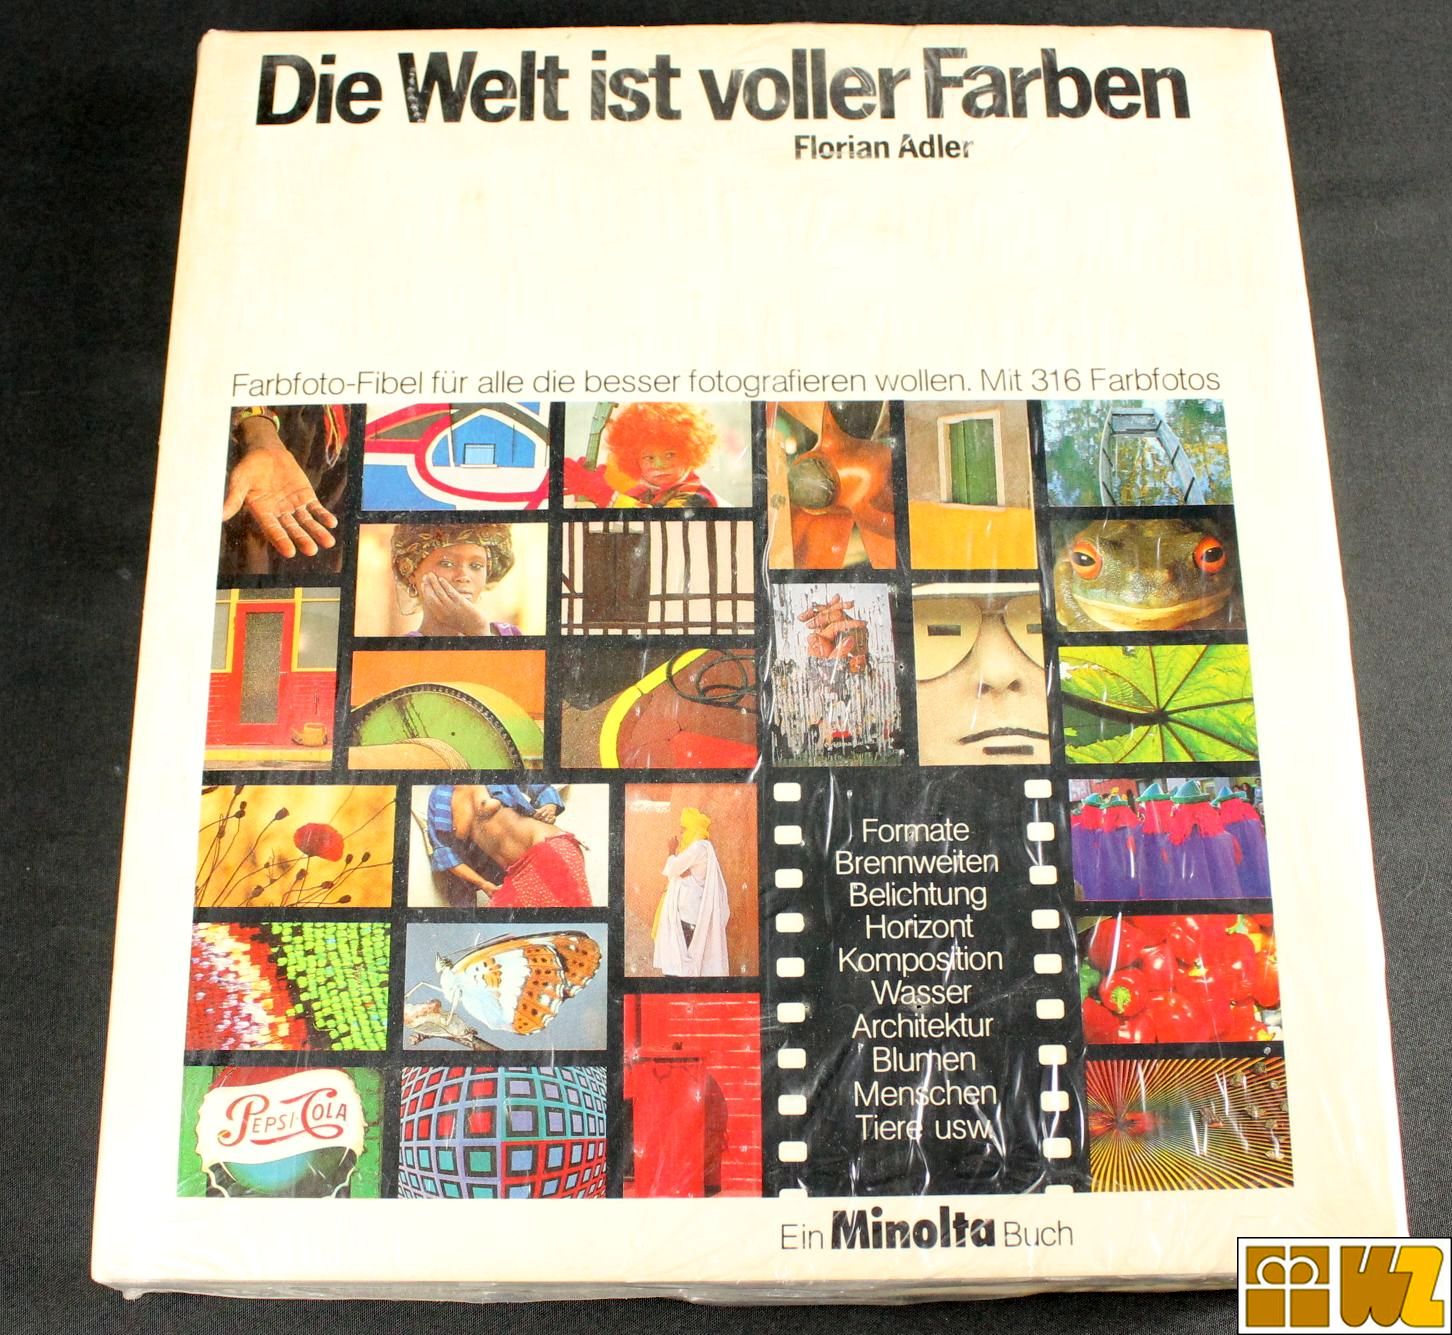 Minolta-Buch Florian Adler: Die Welt ist voller Farben, neu OVP